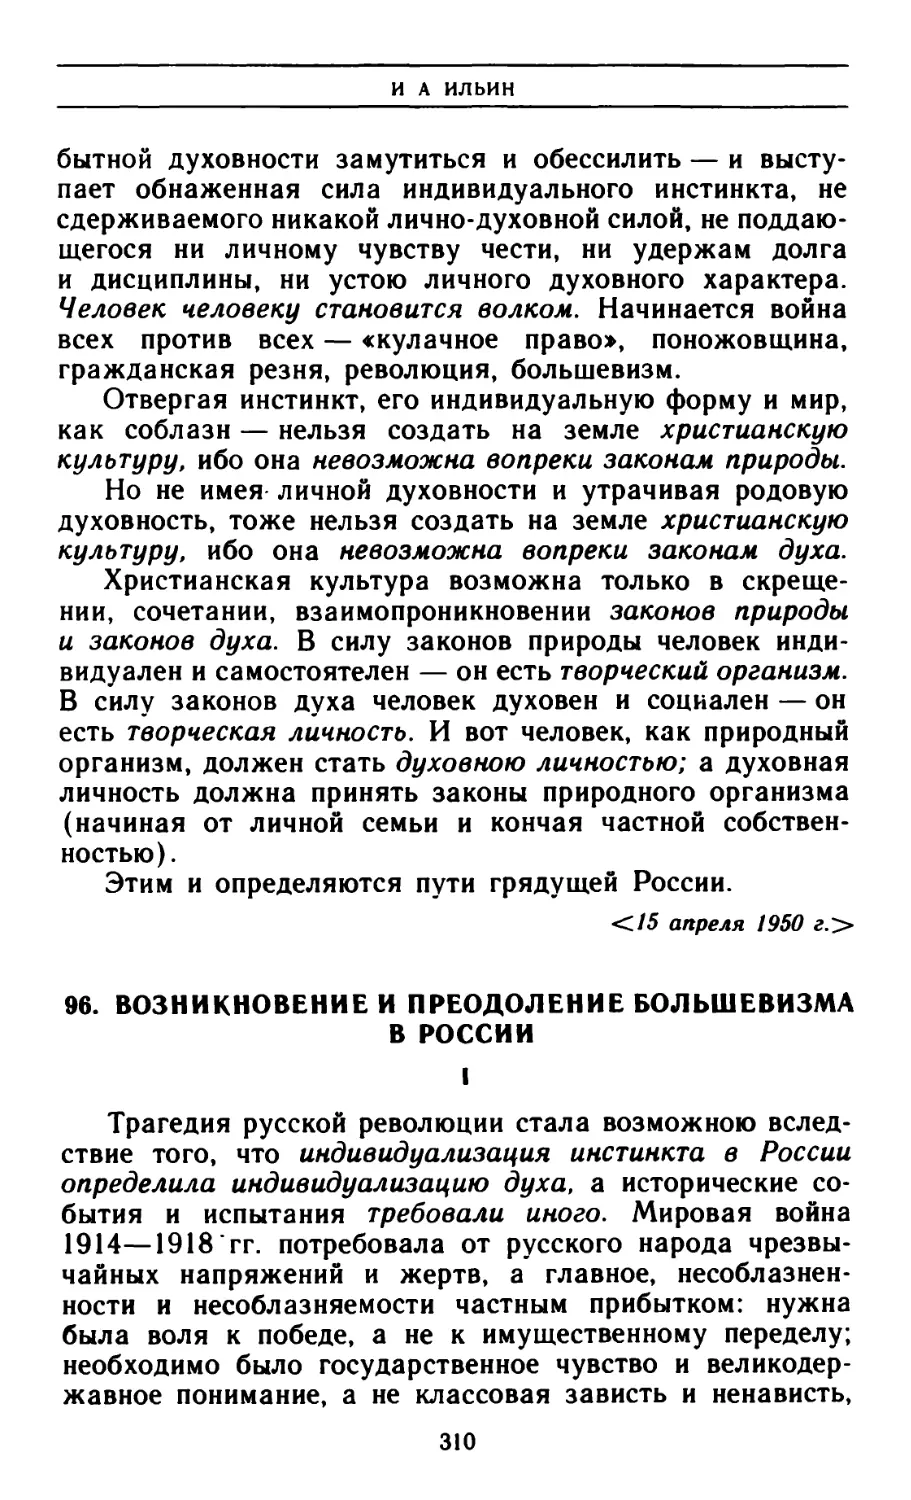 96. Возникновение и преодоление большевизма в России I